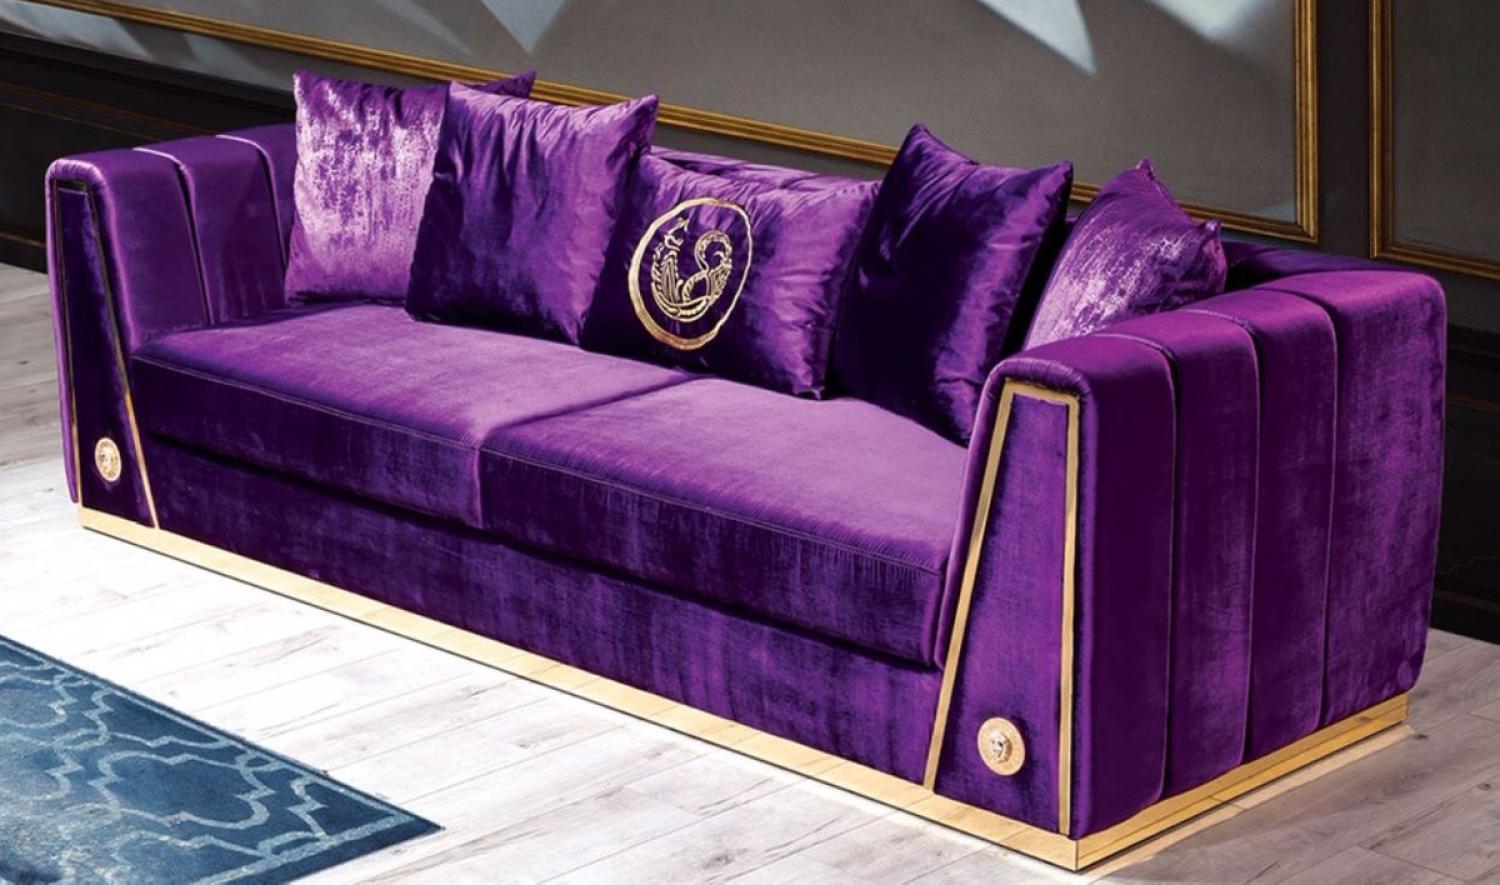 Casa Padrino Luxus Couch Lila / Gold 260 x 90 x H. 76 cm - Edles Wohnzimmer Sofa mit dekorativen Kissen - Luxus Möbel Bild 1